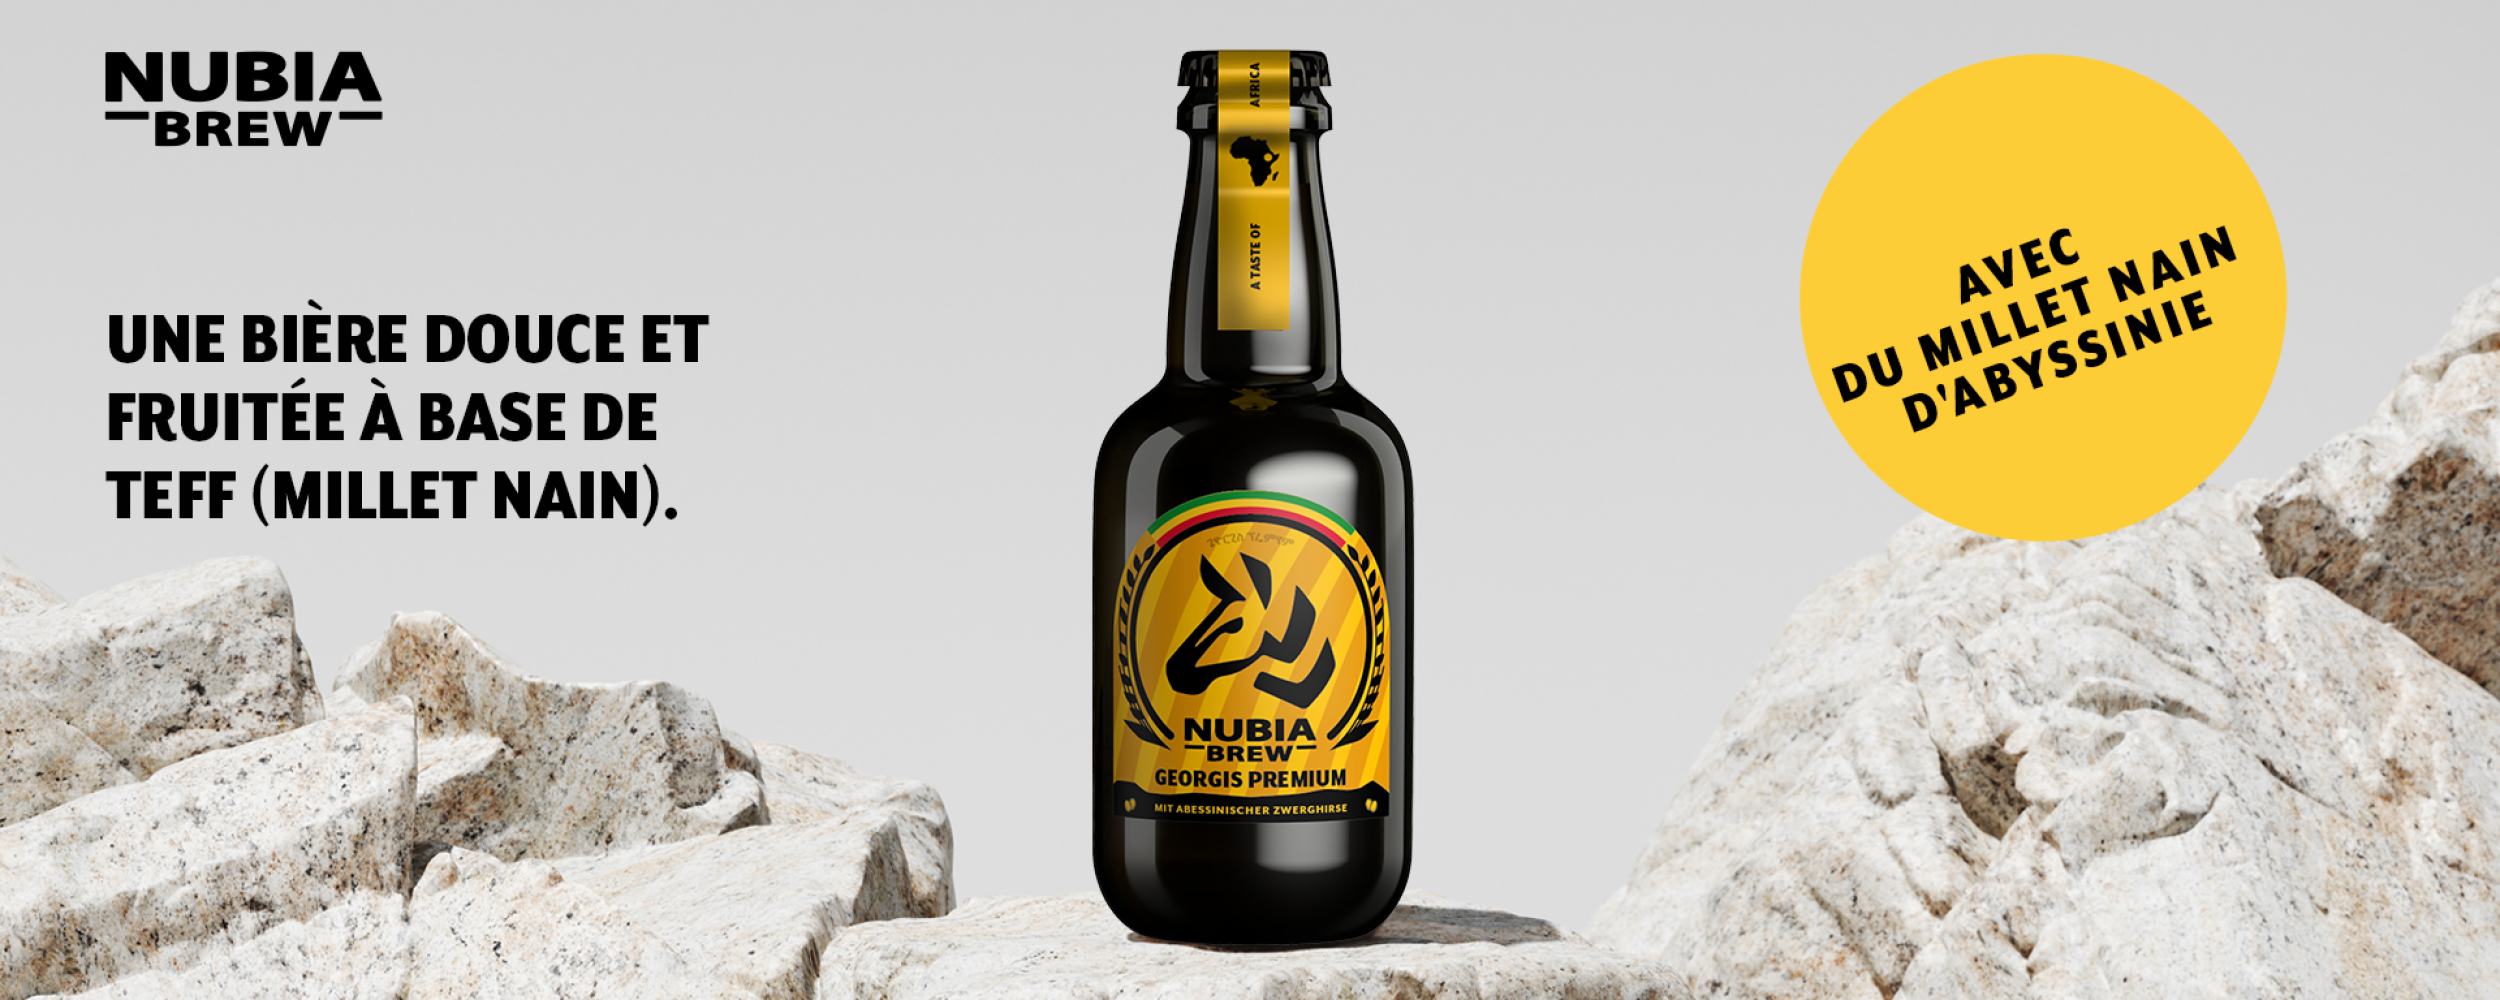 Georgis Premium - une bière douce et fruitée à base de teff (millet nain)